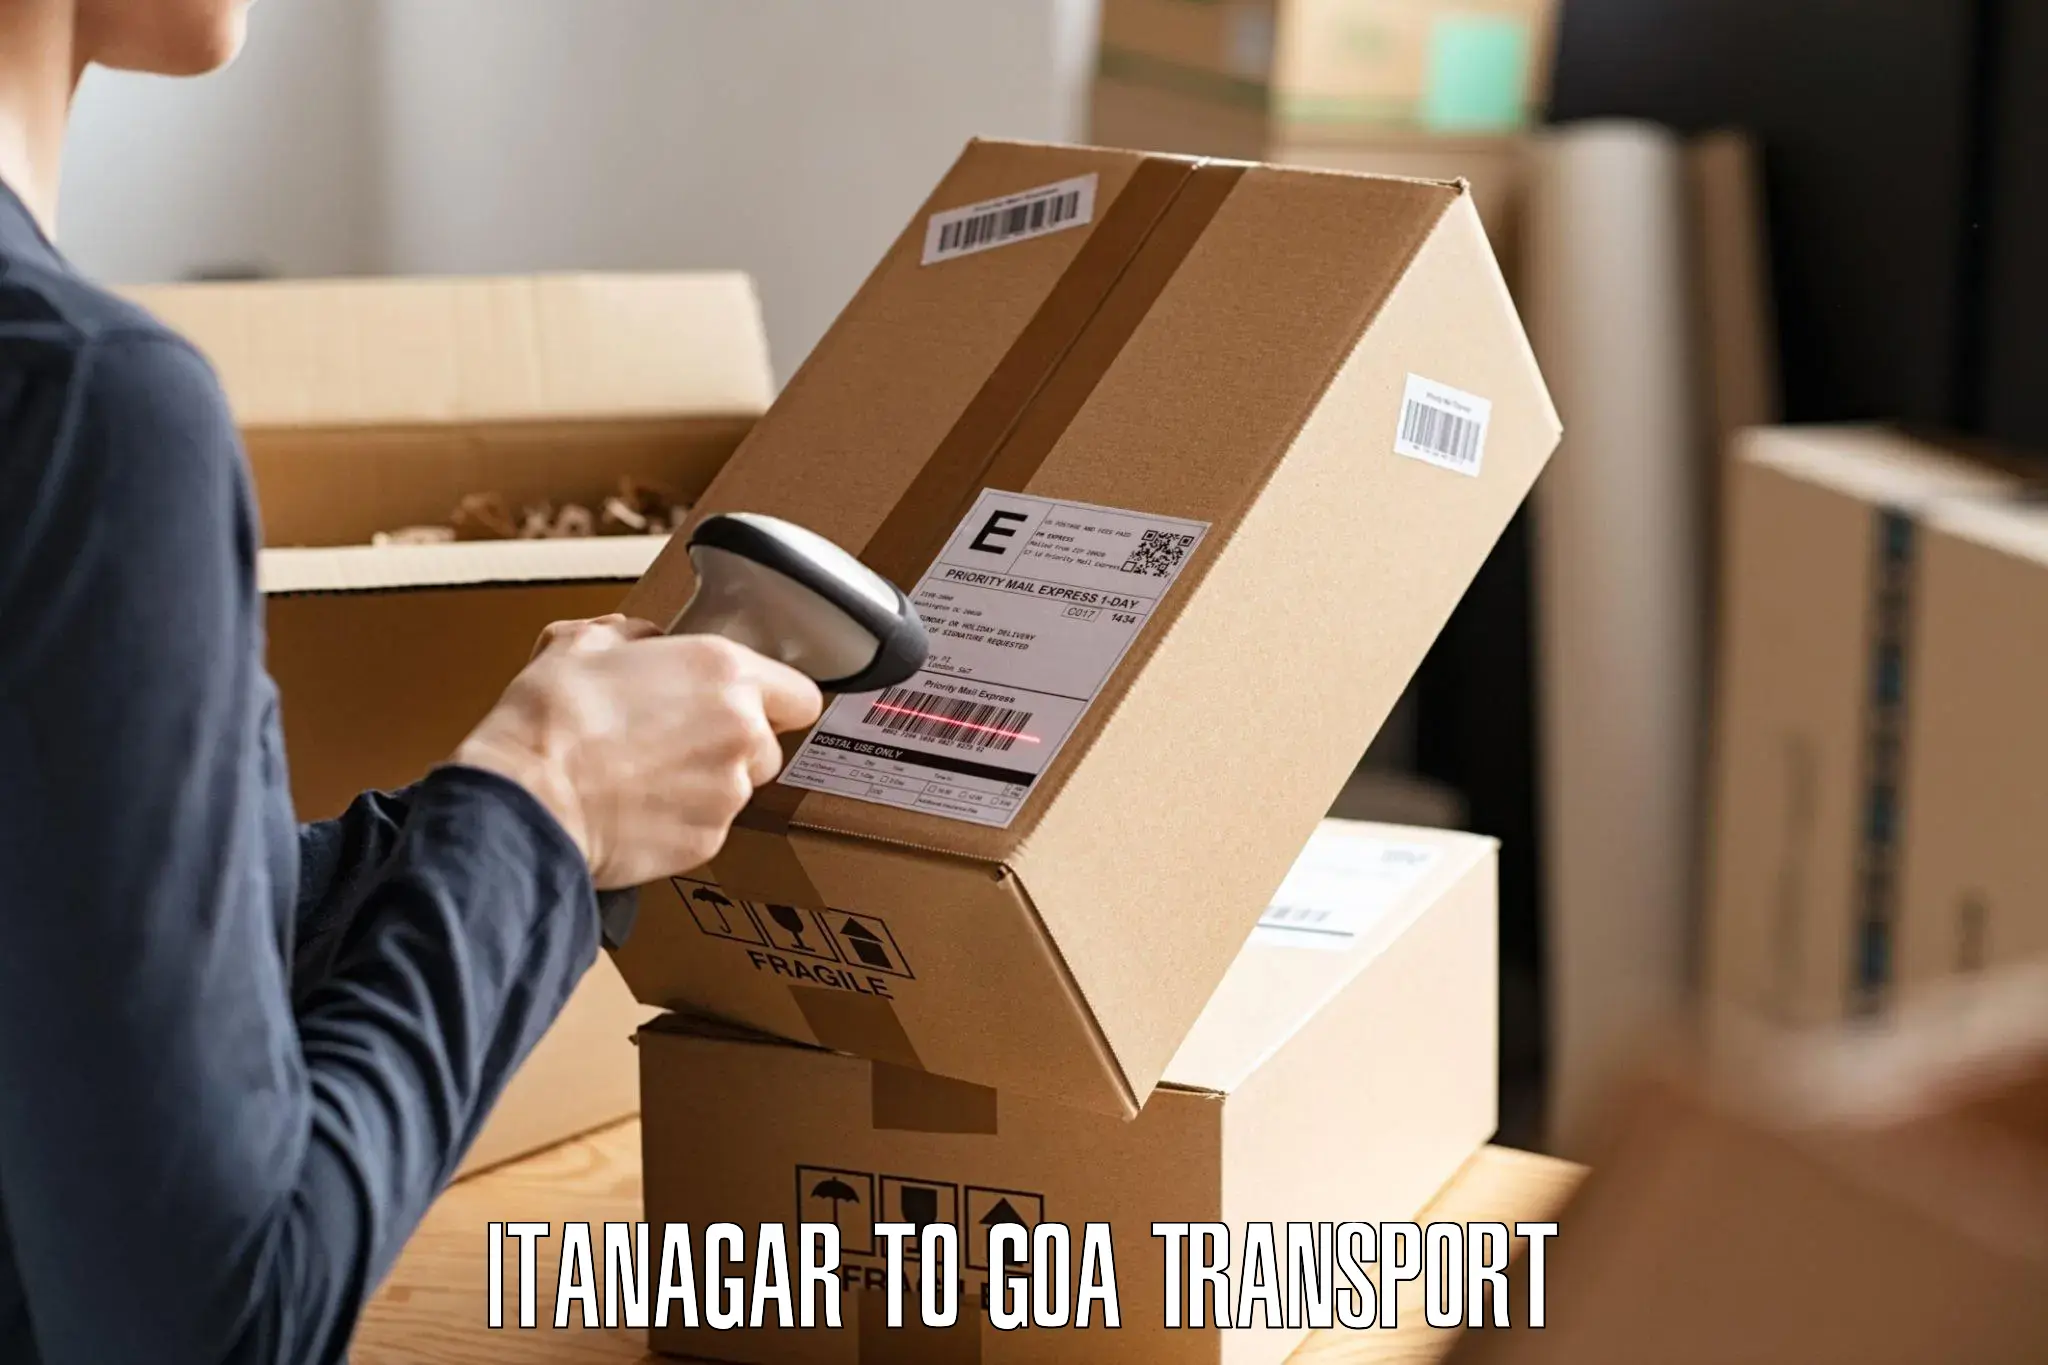 Express transport services Itanagar to Panaji